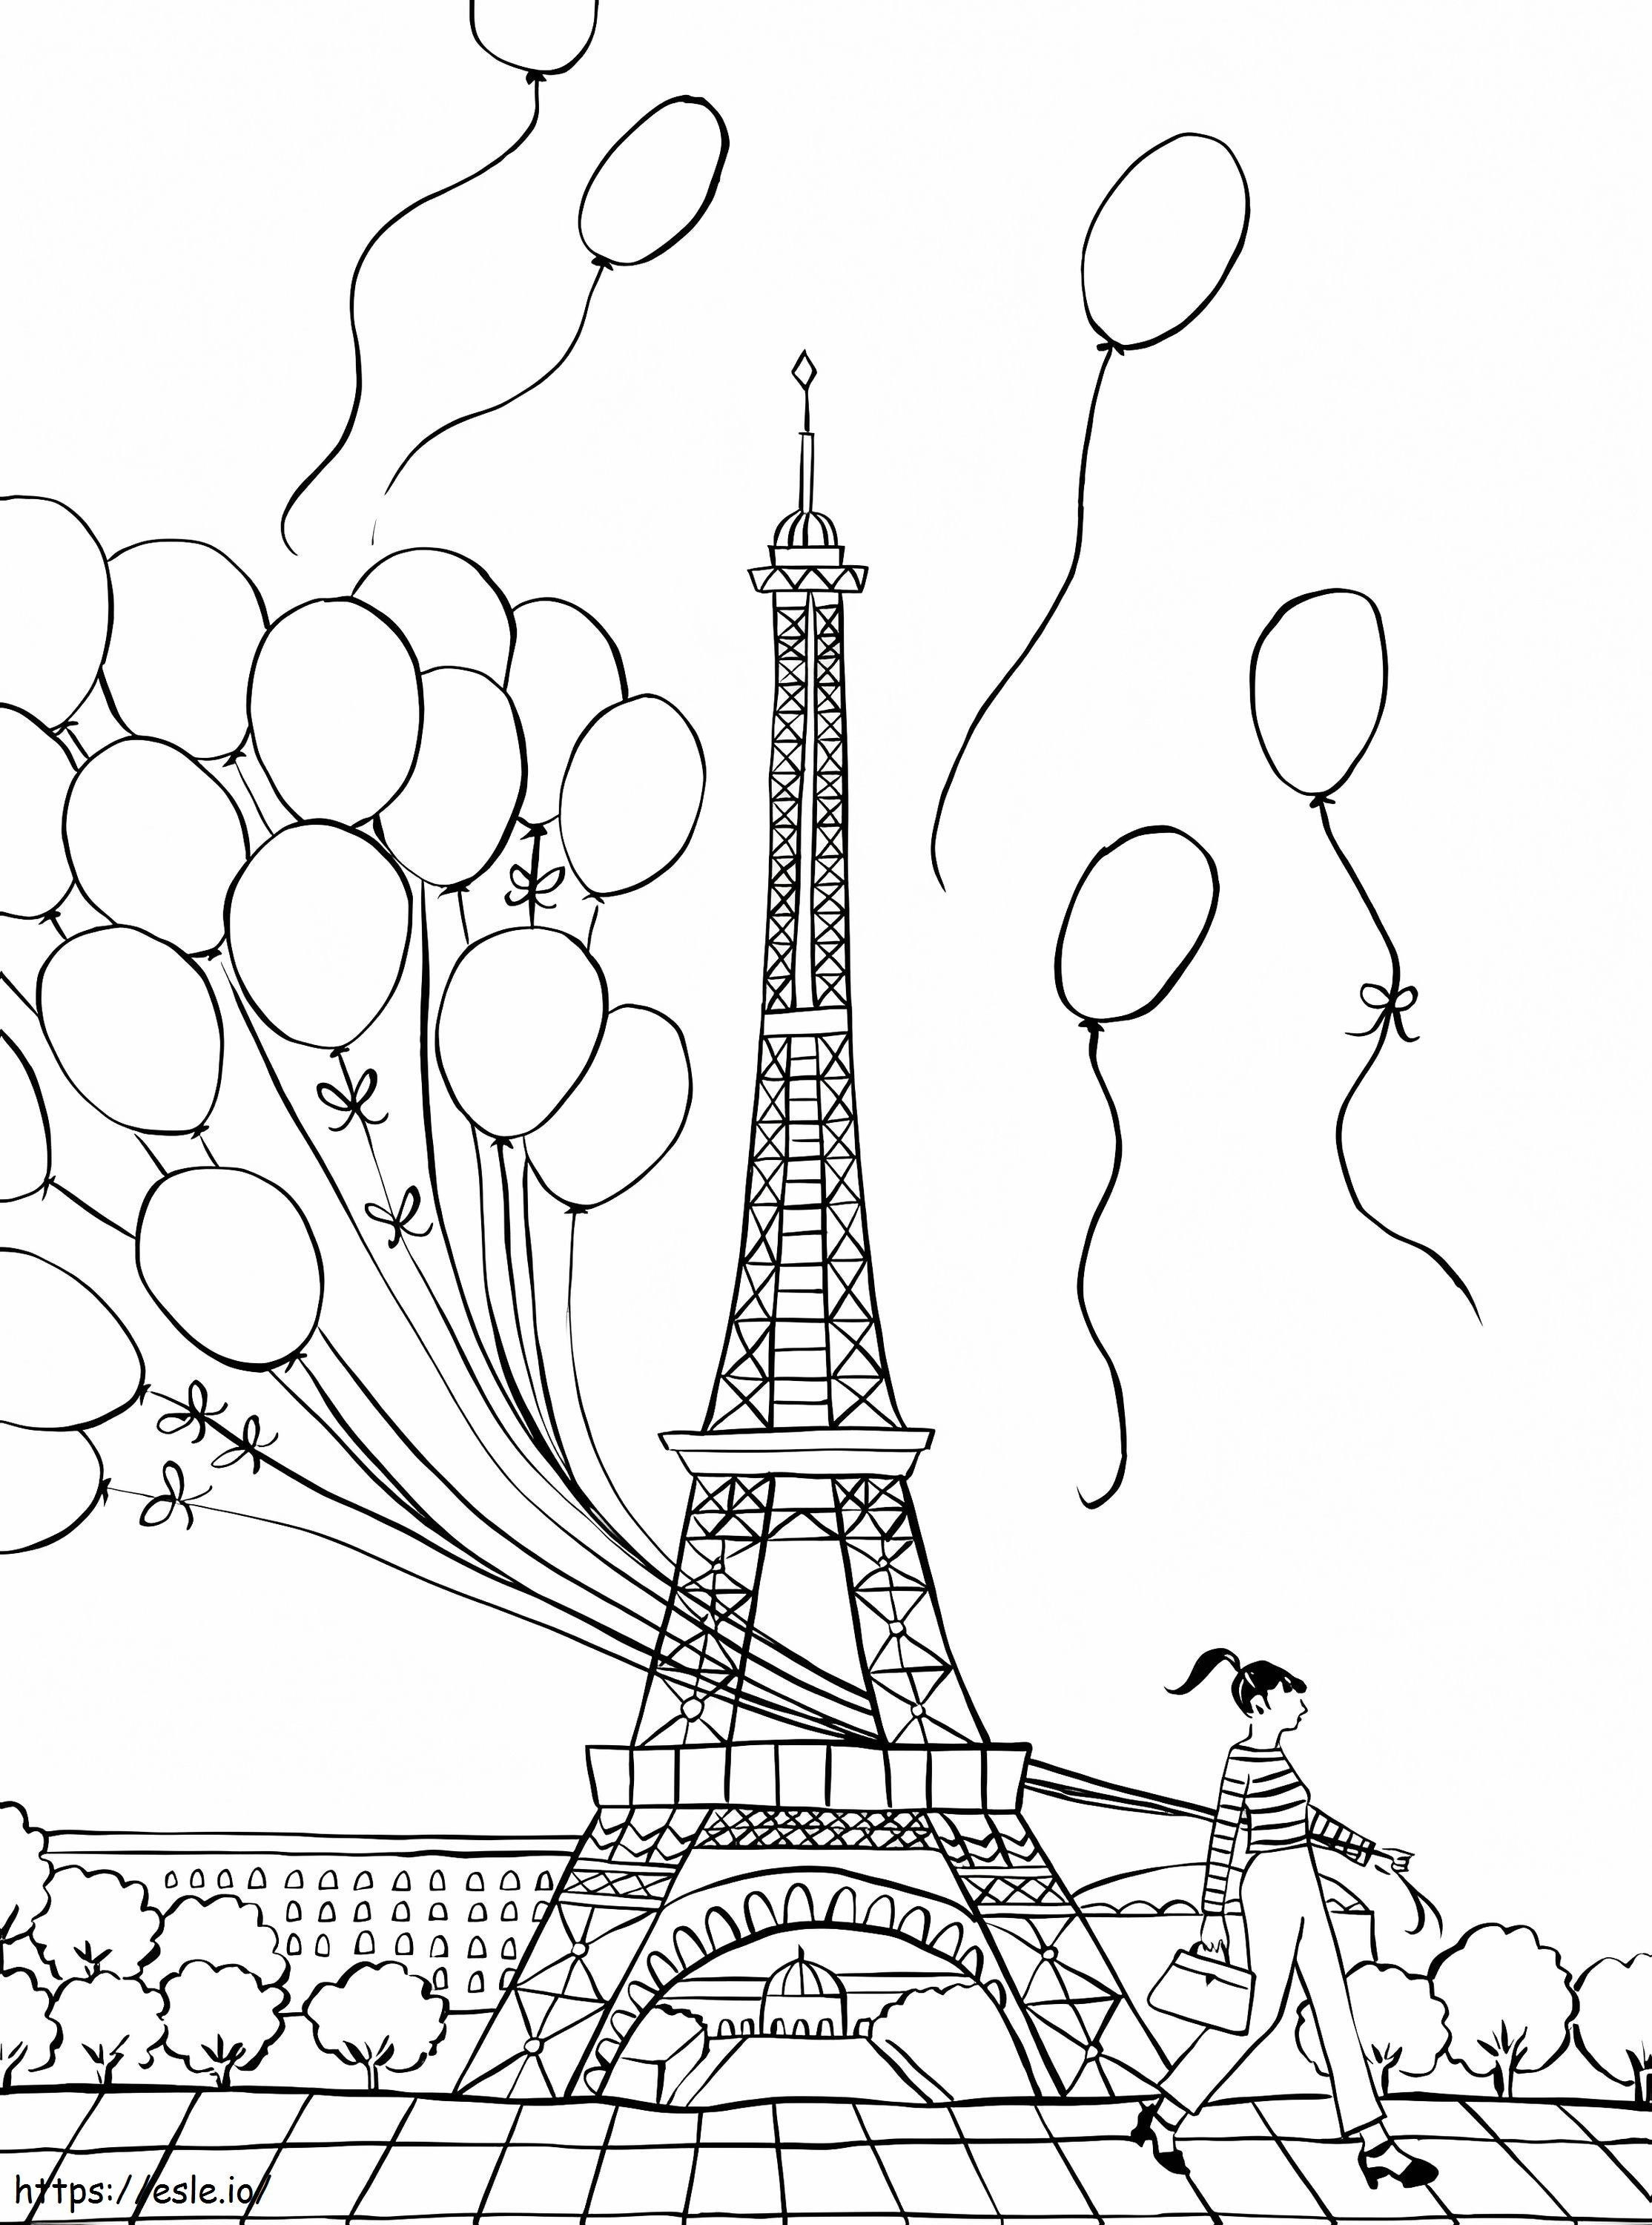 De Ballon Van De Meisjesholding In Parijs kleurplaat kleurplaat